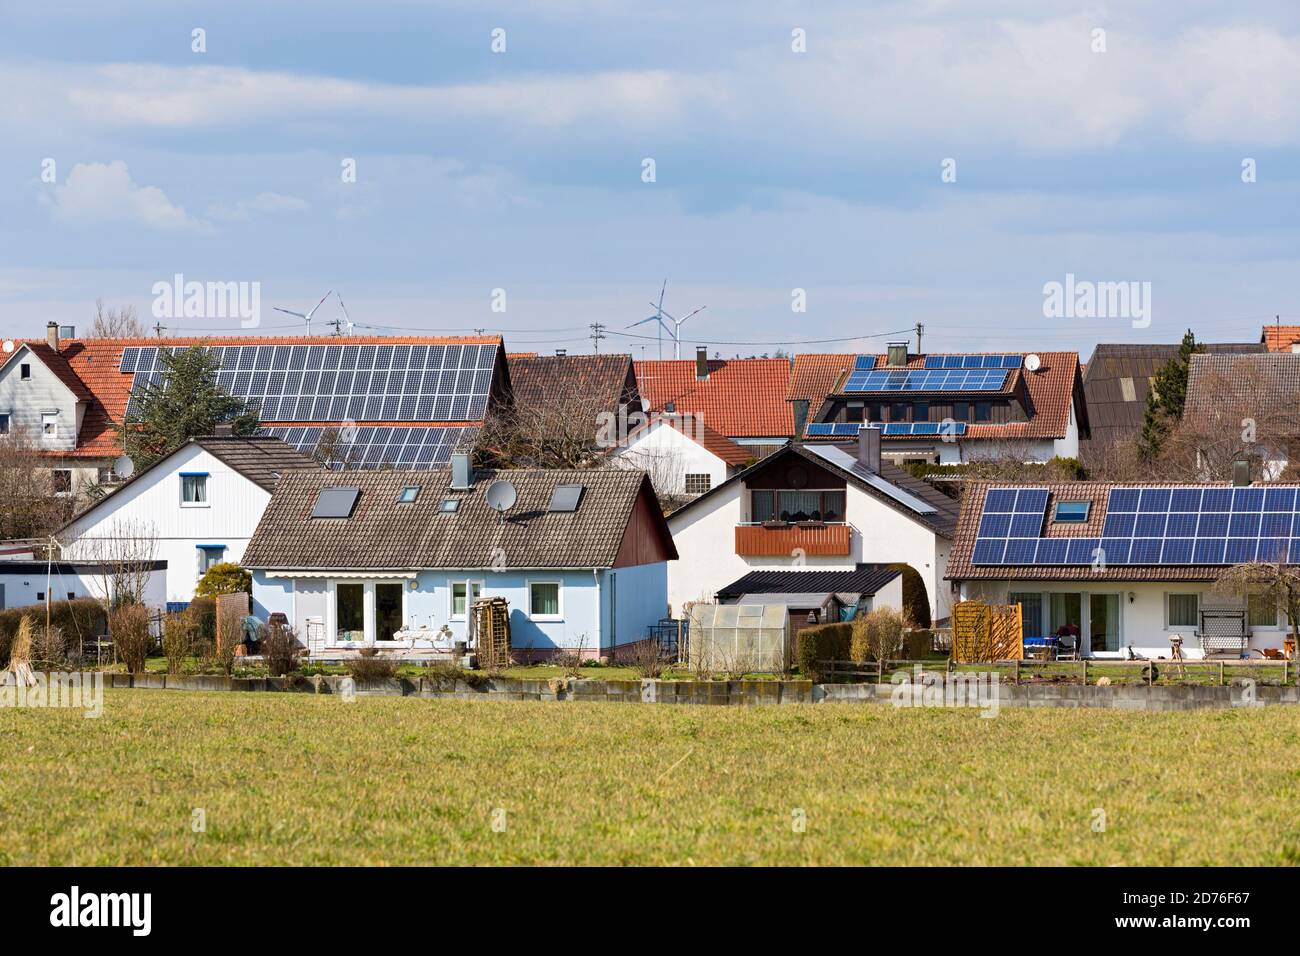 Energien rigenerativo, Wohnsiedlung, Windkraftanlage, Solardach Foto Stock